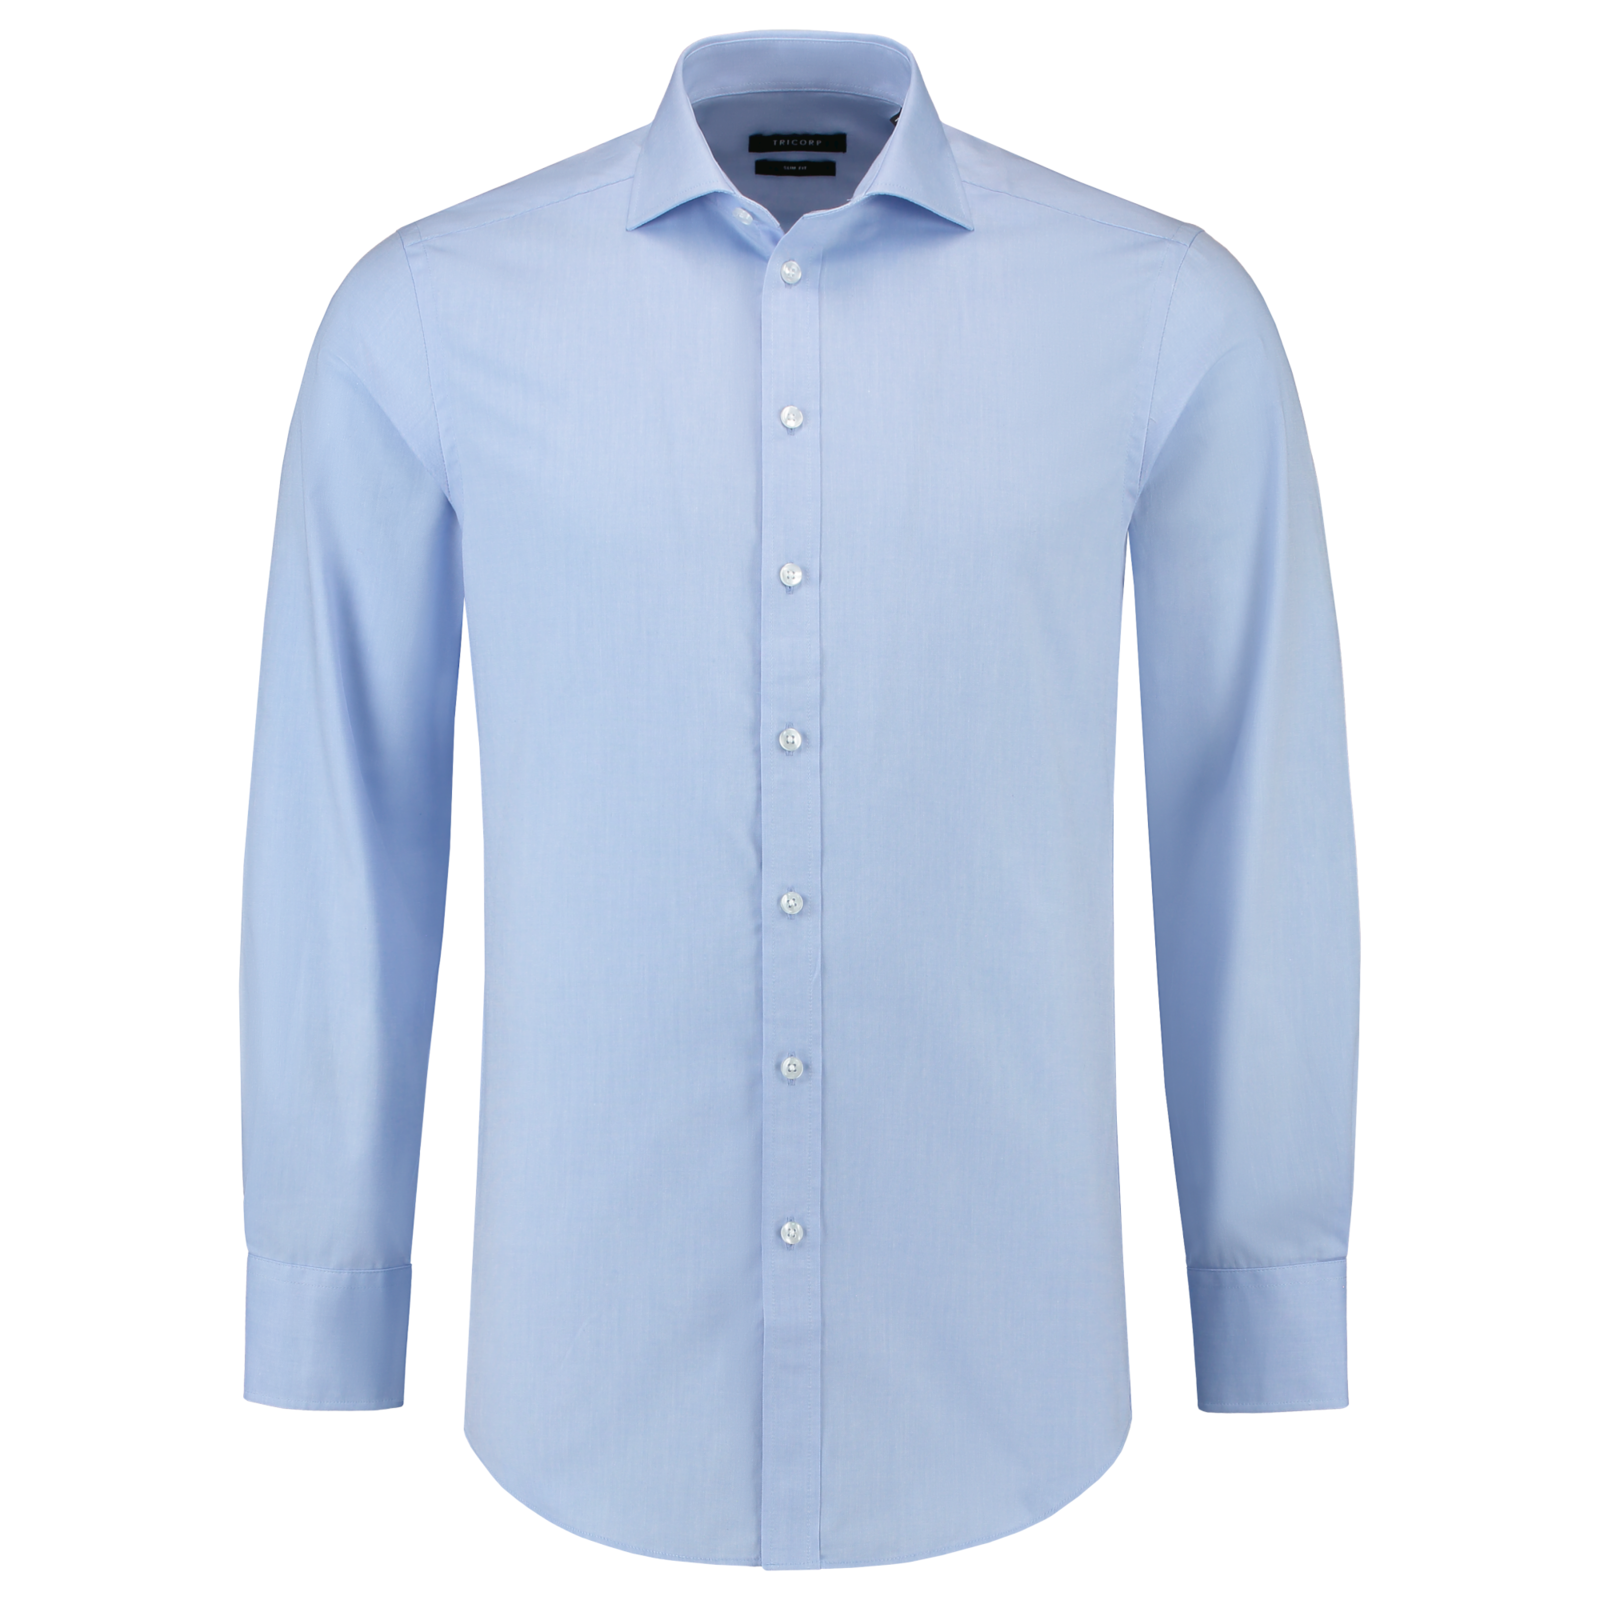 Pánska košeľa s dlhým rukávom Tricorp Fitted Stretch T23 - veľkosť: 46, farba: svetlo modrá